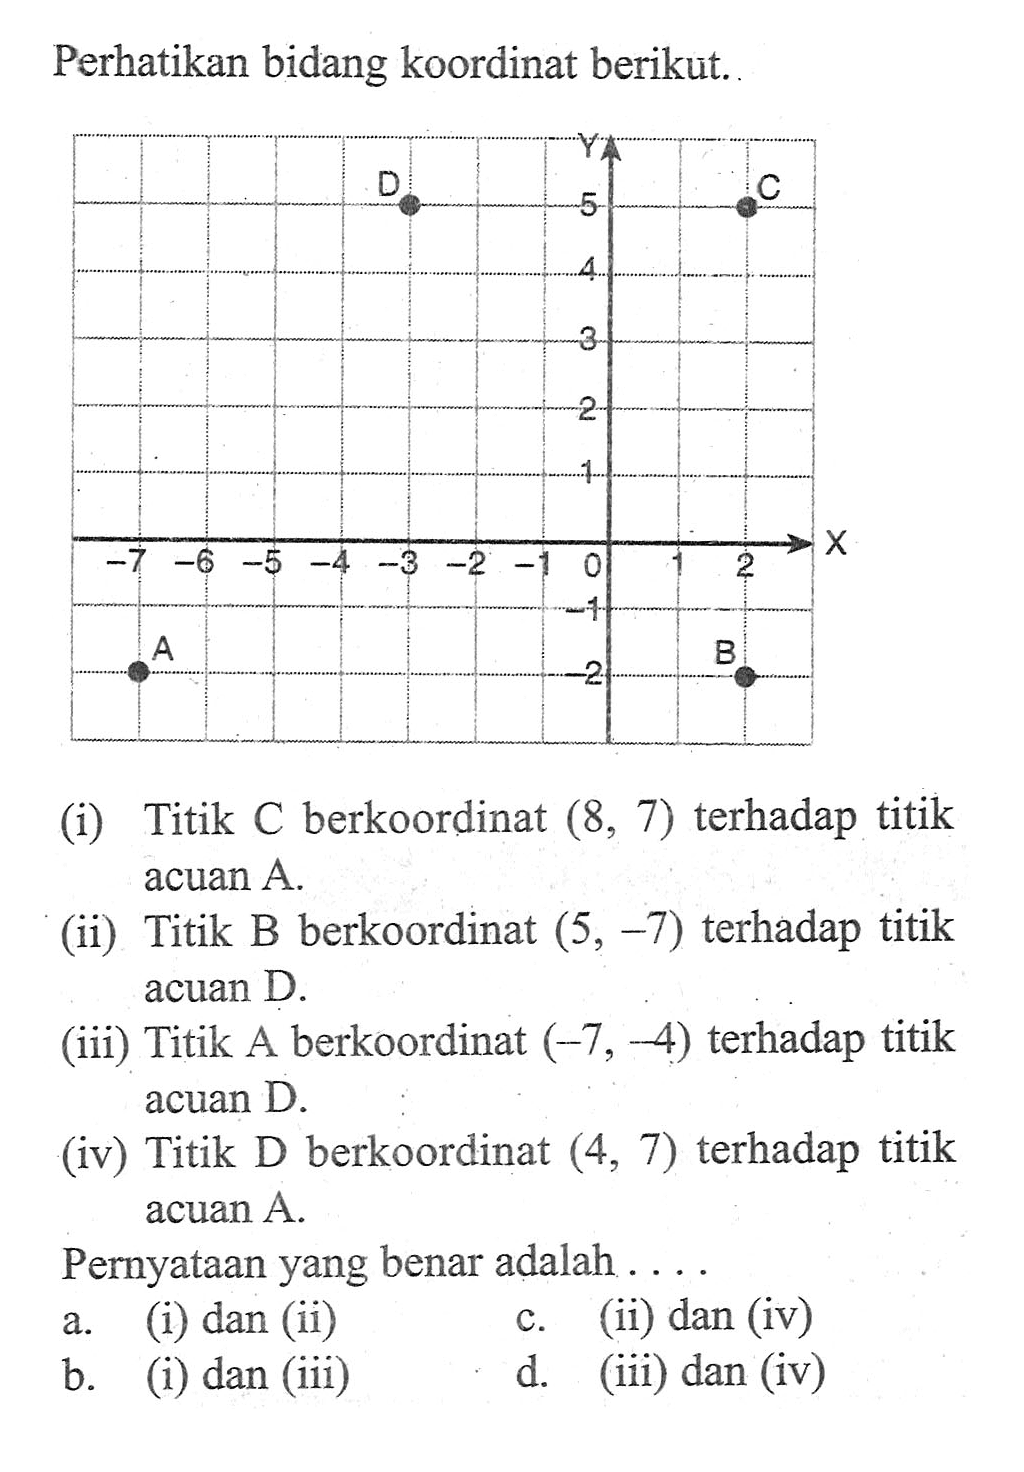 Perhatikan bidang koordinat berikut. (i) Titik C berkoordinat (8, 7) terhadap titik acuan A. (ii) Titik B berkoordinat (5, -7) terhadap titik (ii) acuan D. (iii) Titik A berkoordinat (-7, -4) terhadap titik acuan D. (iv) Titik D berkoordinat (4, 7) terhadap titik acuan A. Pernyataan yang benar adalah . . . .